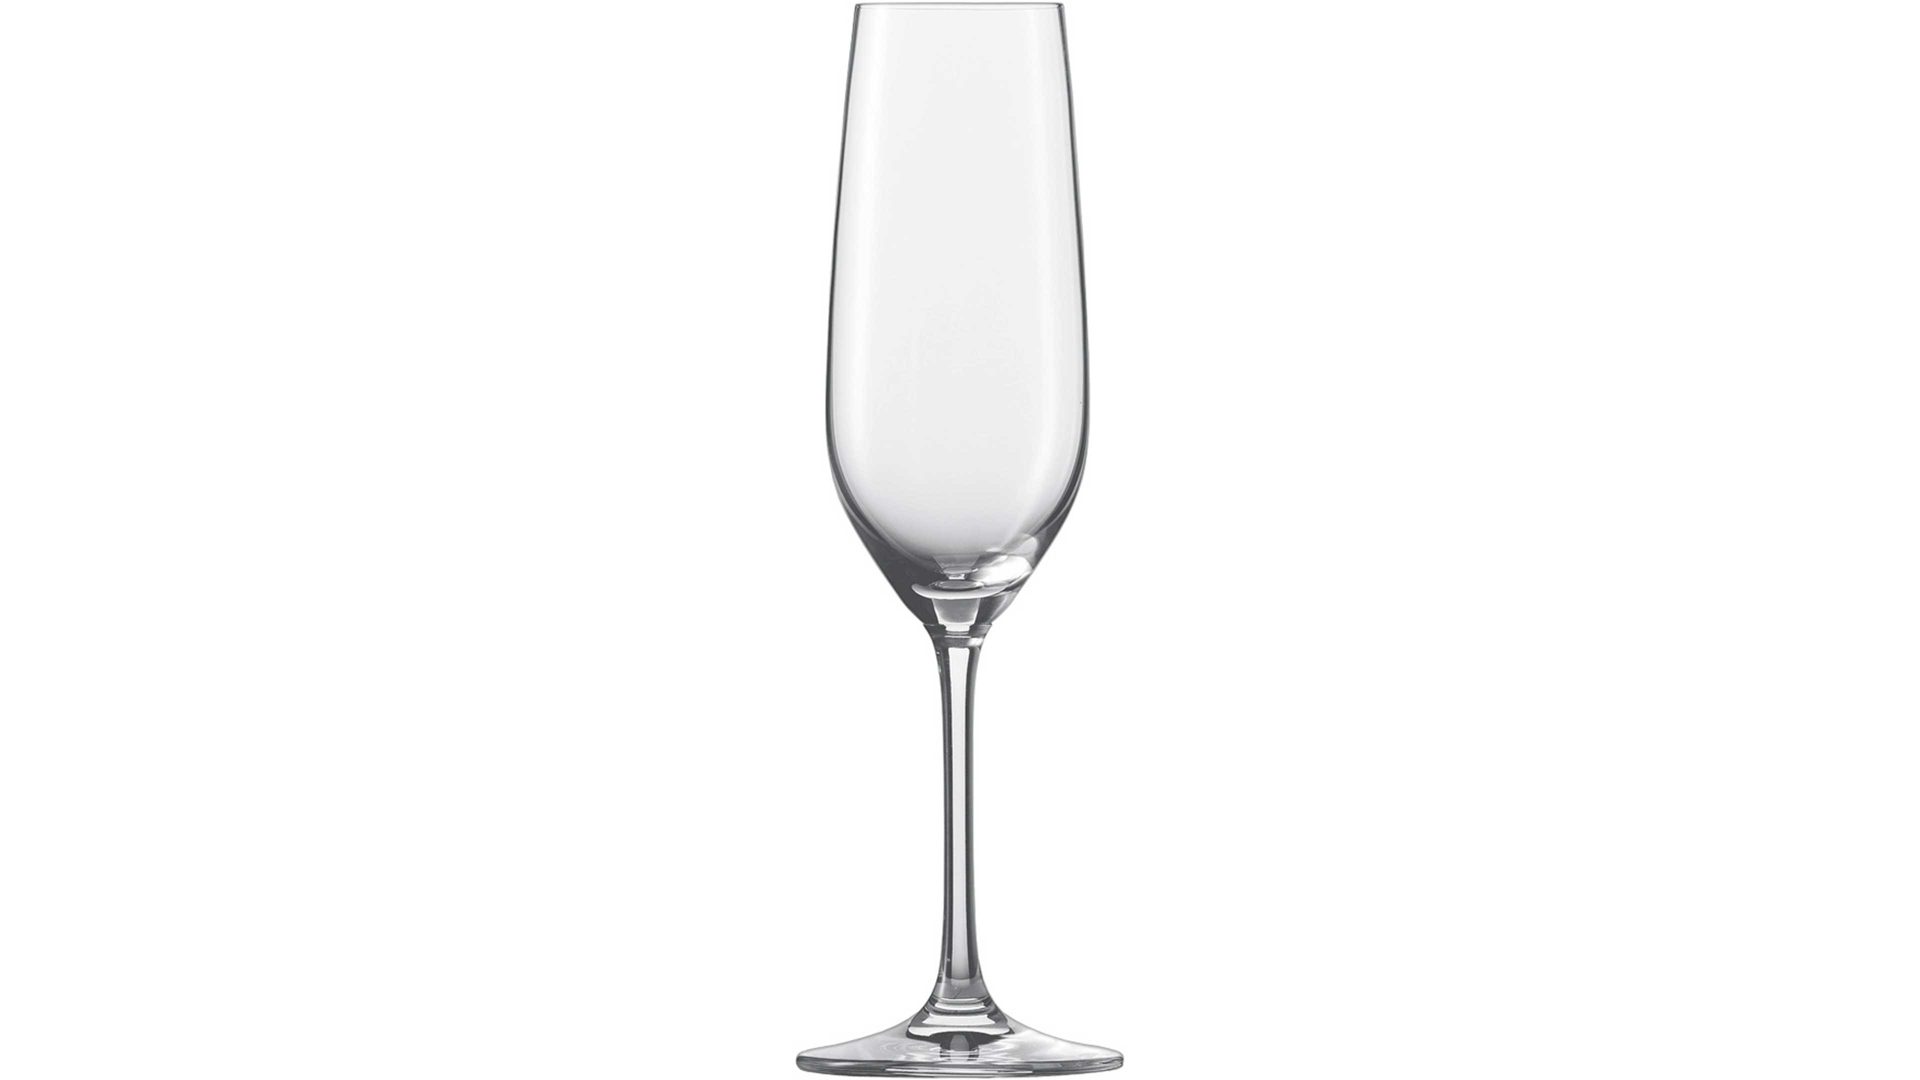 Sektglas Schott zwiesel aus Glas in Transparent SCHOTT ZWIESEL Sektglas Forte Tritan®-Kristallglas – ca. 227 ml, 6-teilig